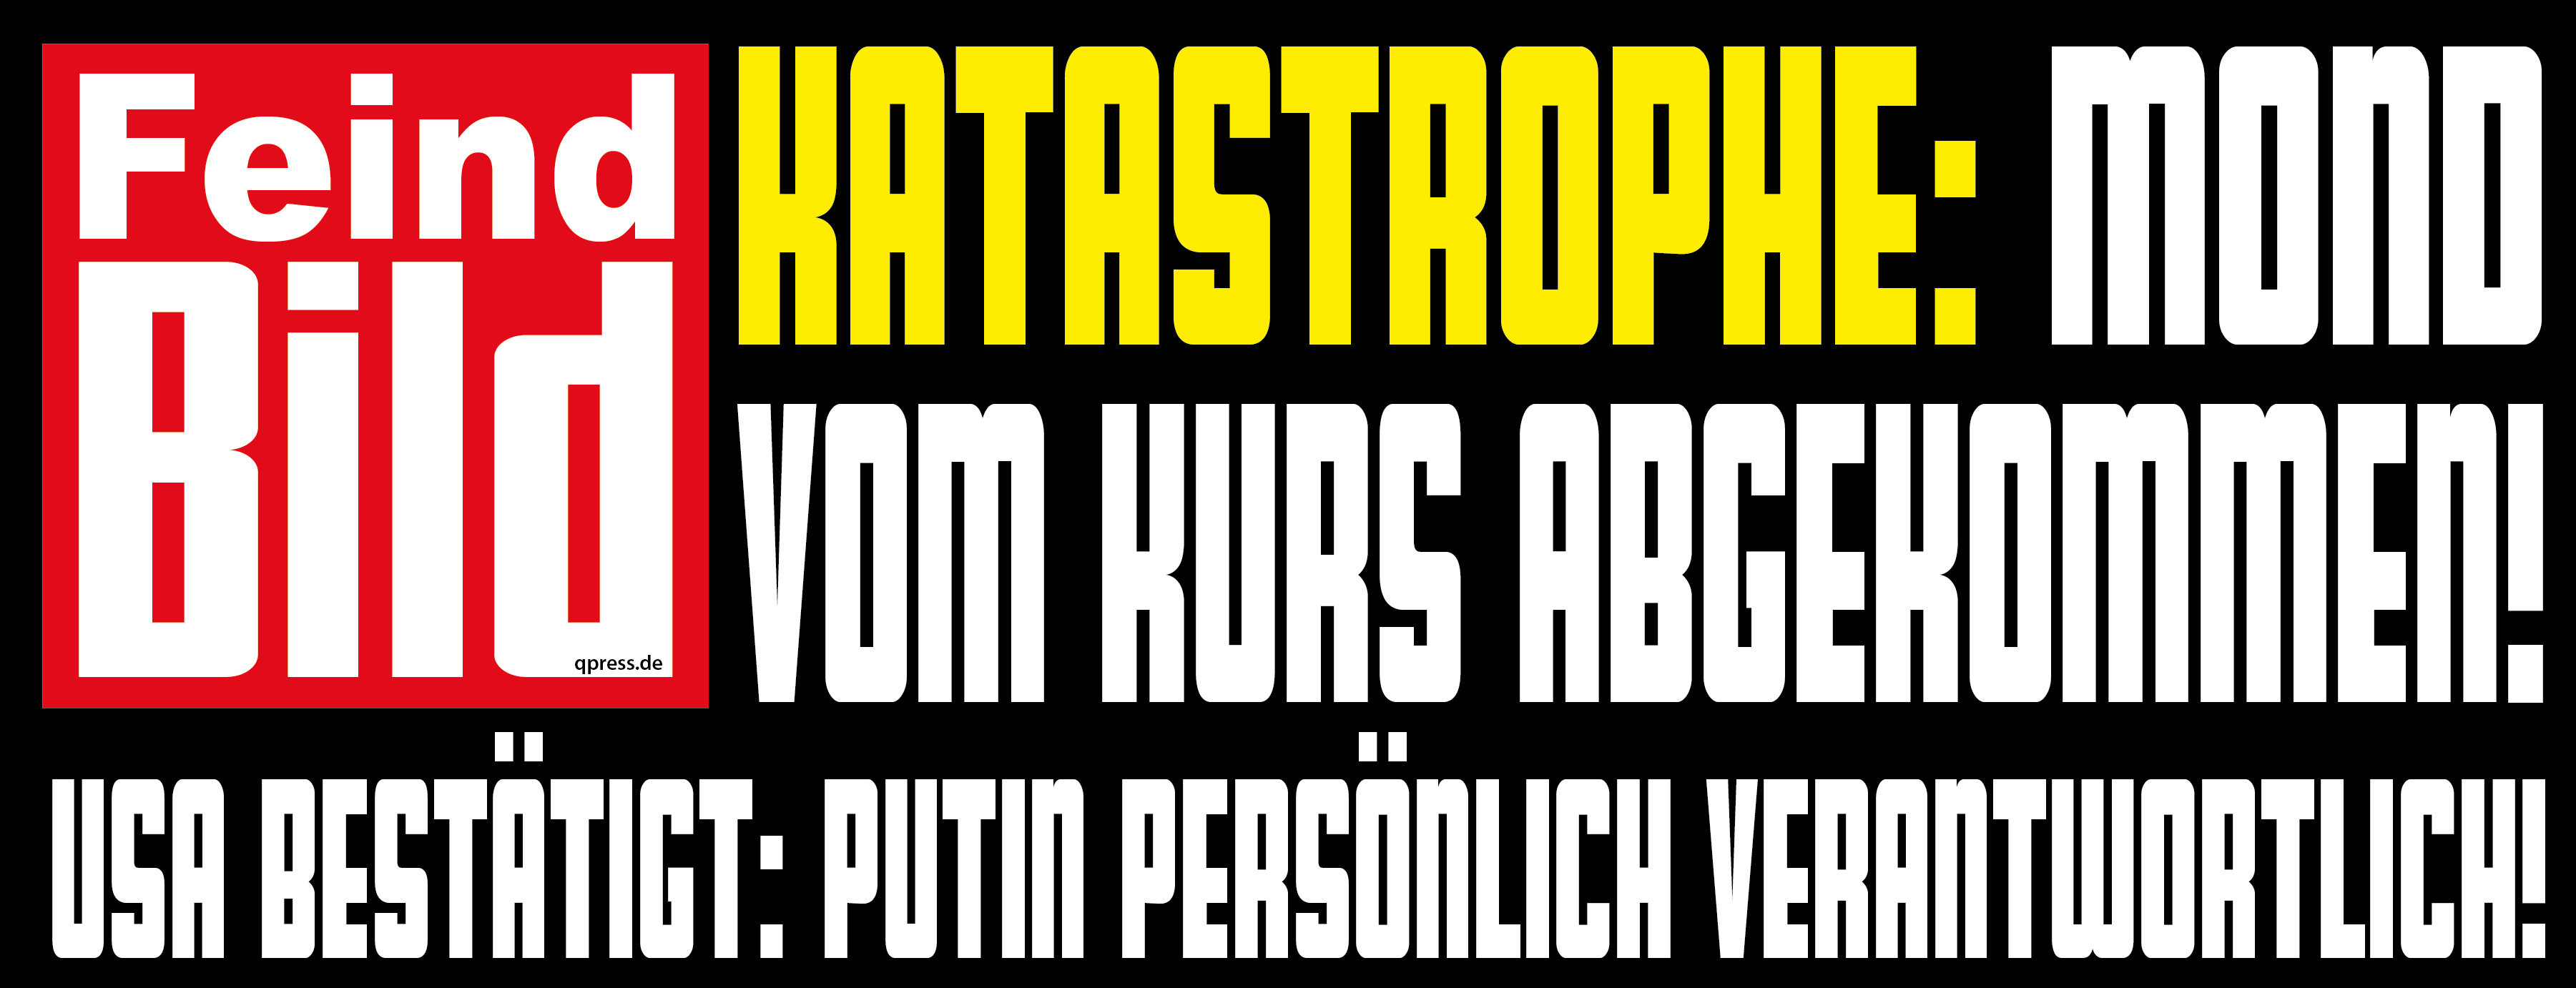 Feind-BIld-Putin-Ukraine-ist-schuld-Propaganda-Schlagzeile-qpress.png